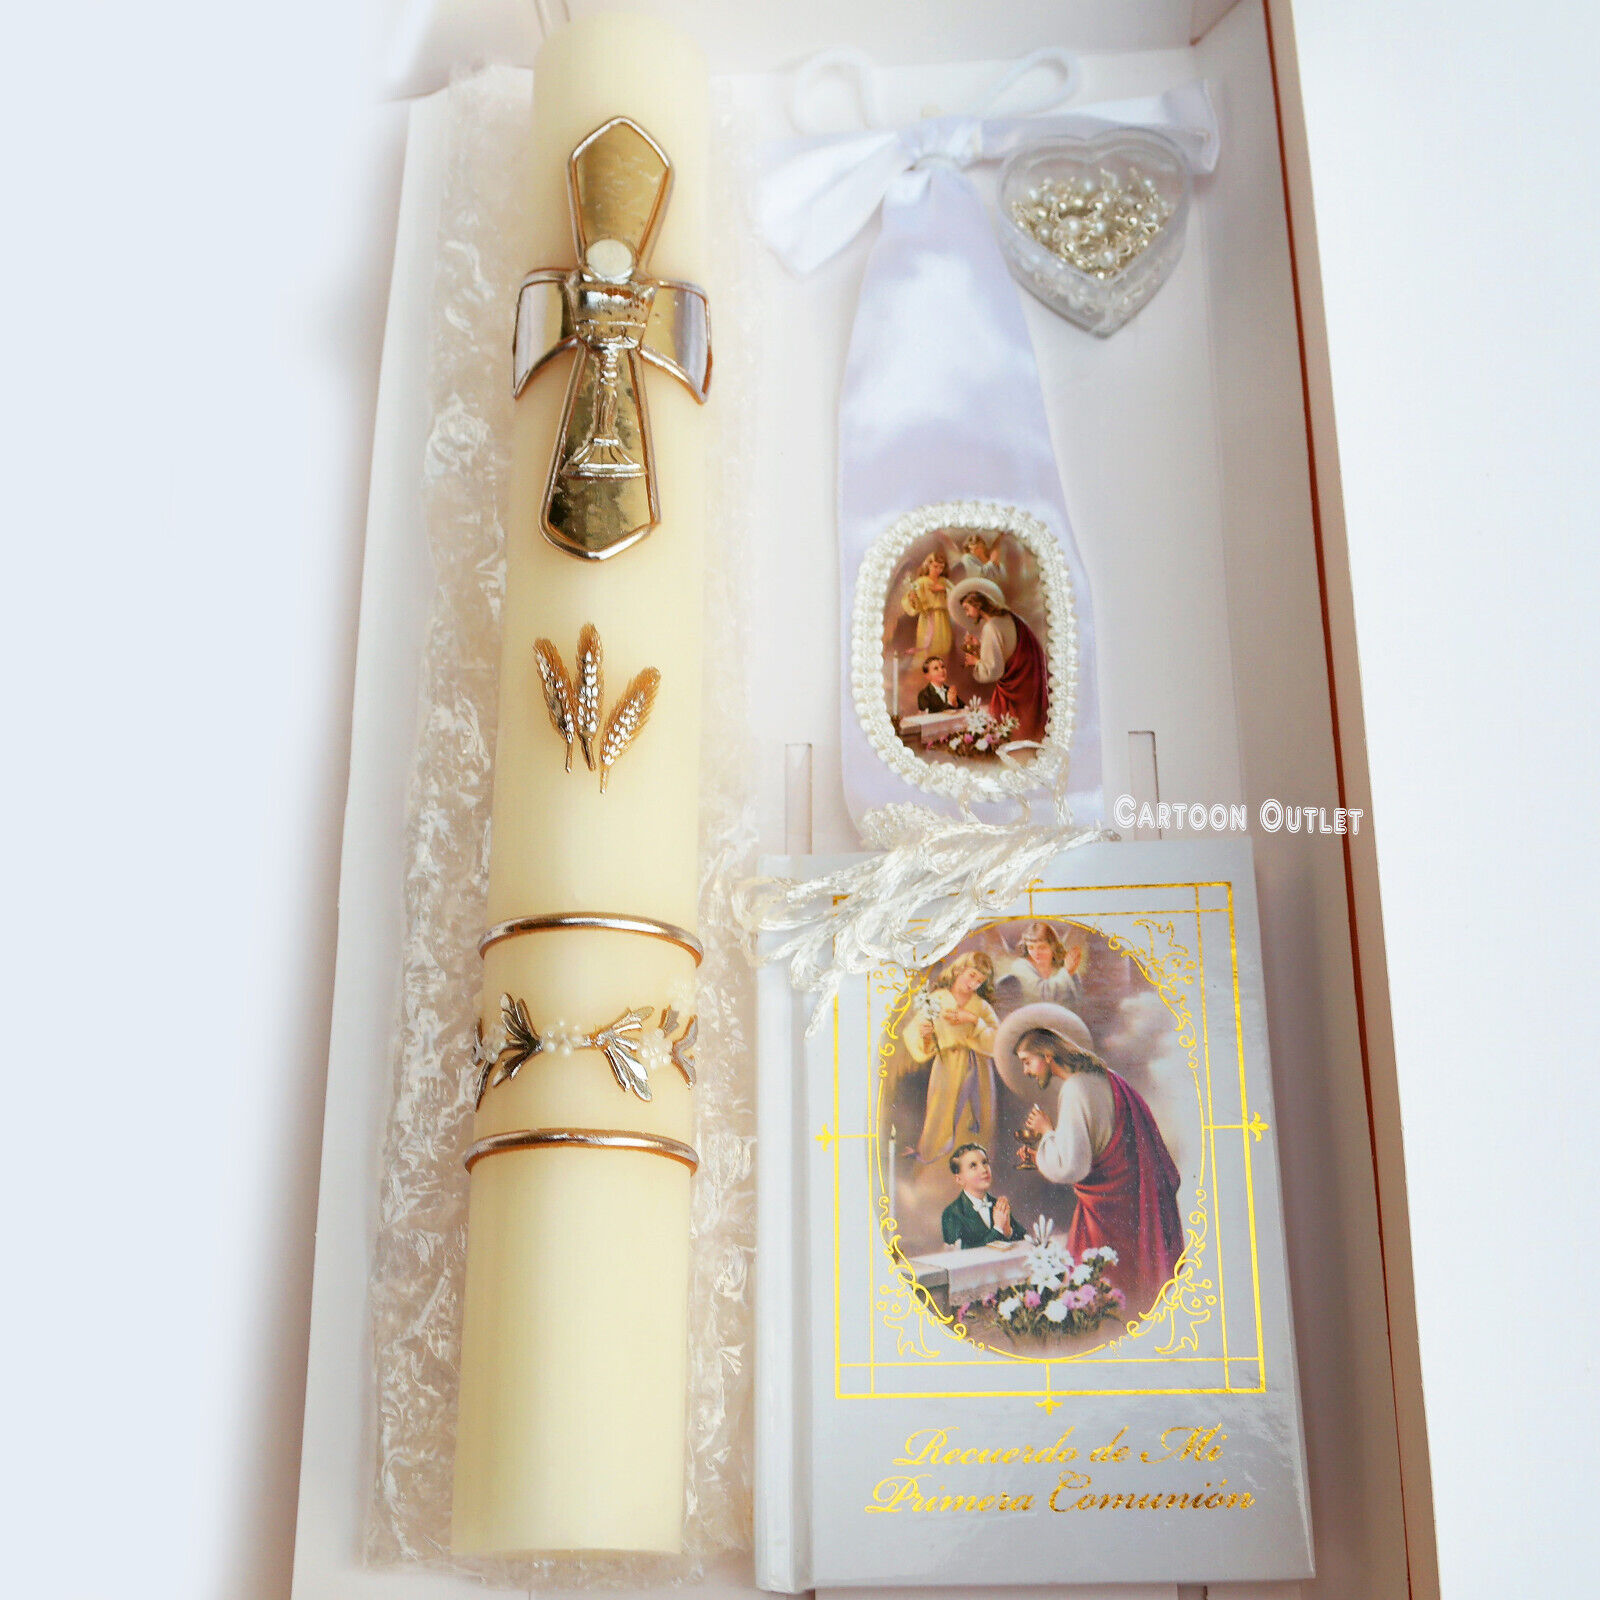 4 pcs First Communion Candle Gift Set Boy Set De Vela De Primera Comunion